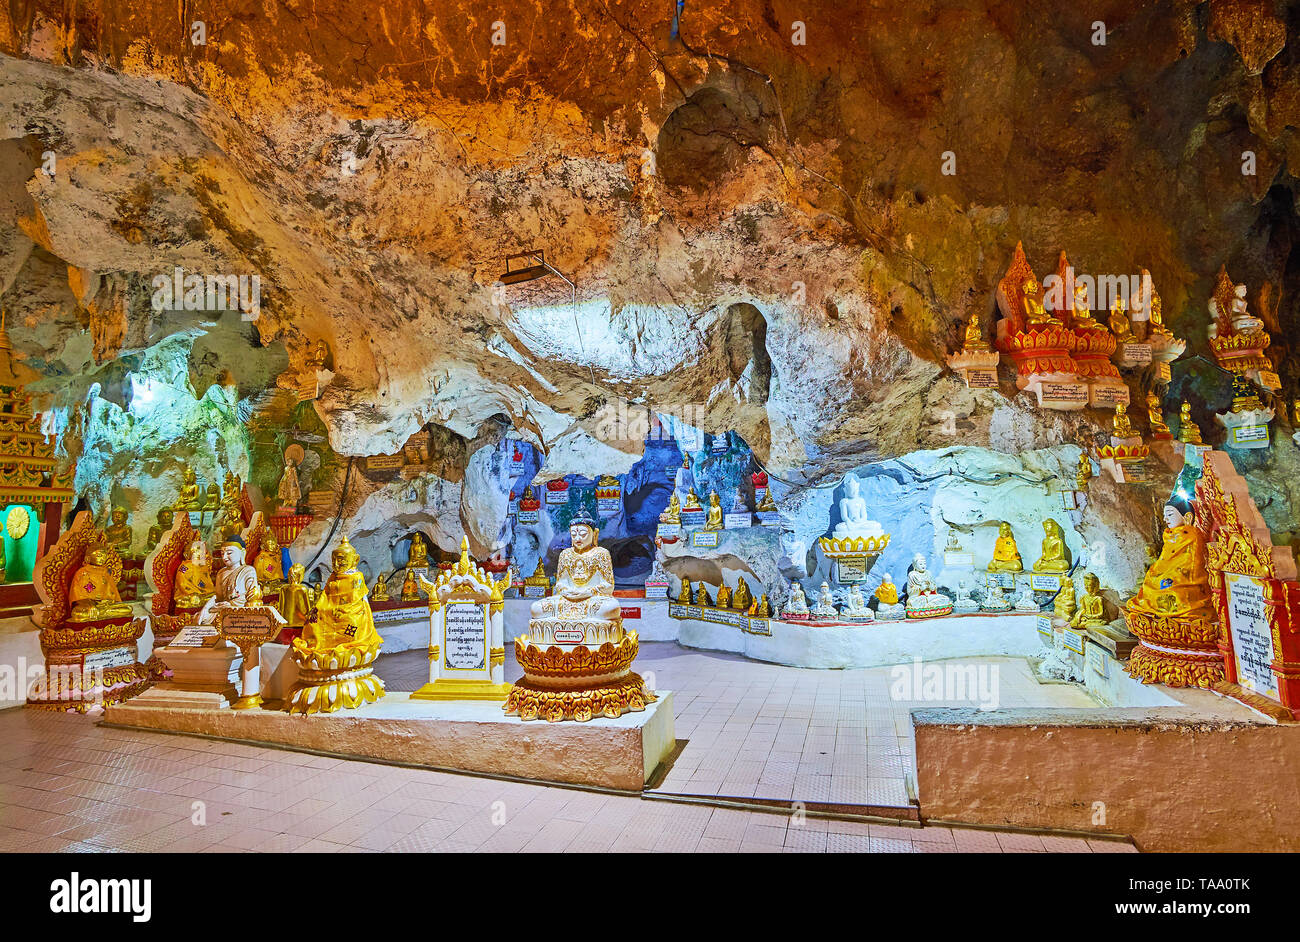 Nach PINDAYA, MYANMAR - Februar 19, 2018: Die schöne Heiligtum auf der unteren Ebene des Pindaya Cave mit kunstvollen Skulpturen von Buddha, am 19. Februar in Stift Stockfoto